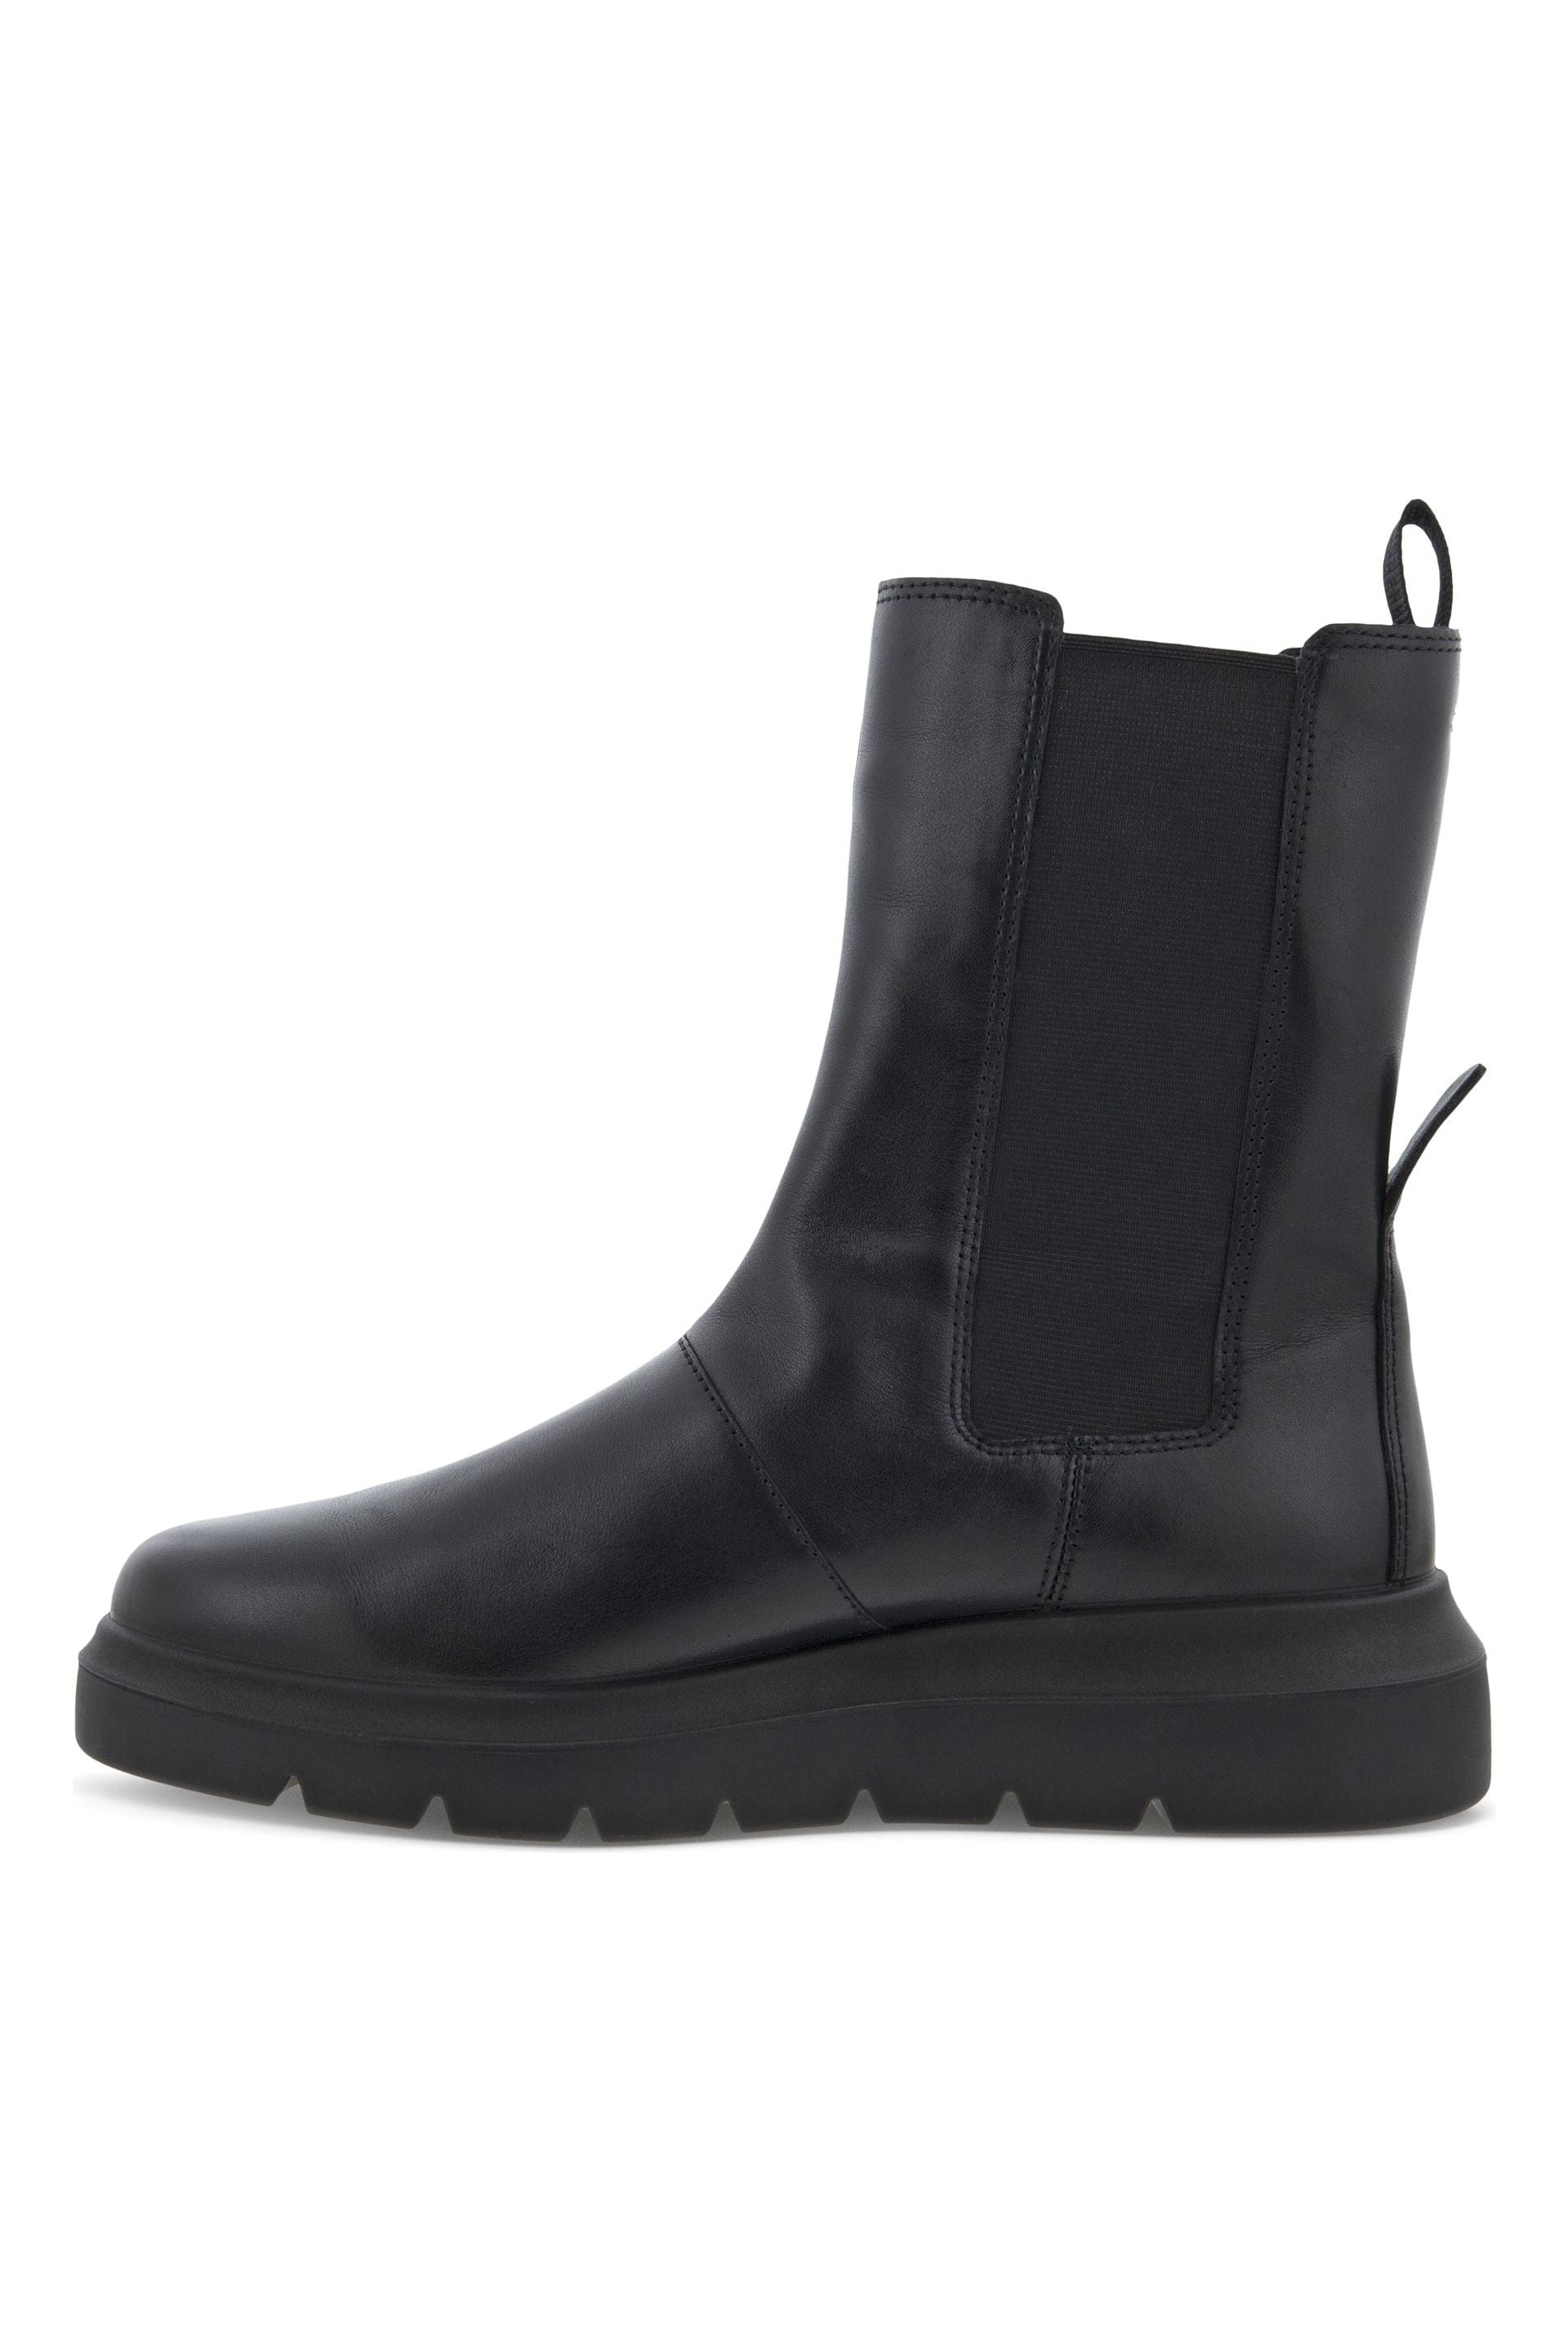 Ecco 216223-01001 Ladies Black Leather Boots